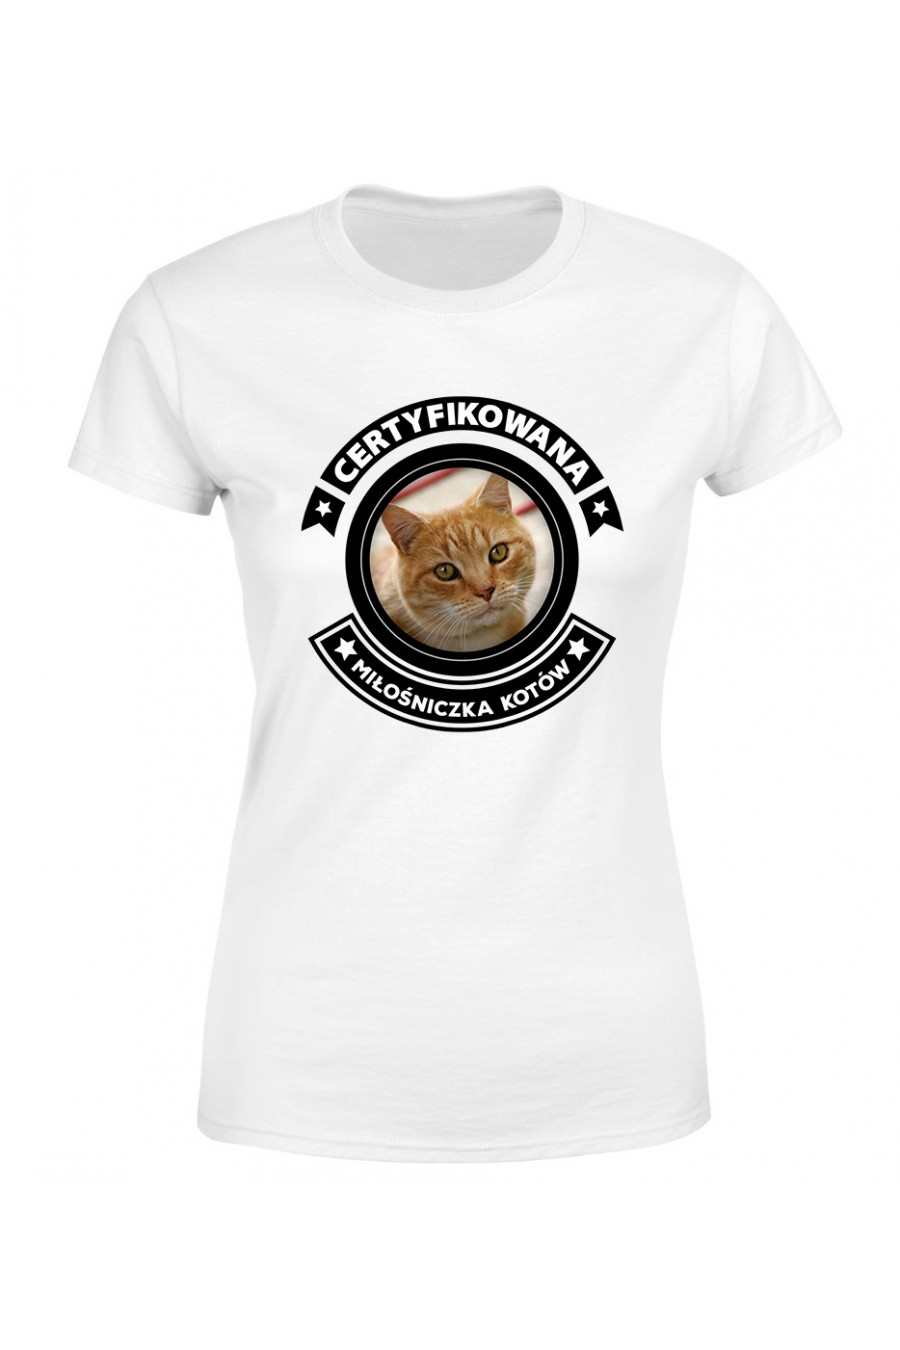 Koszulka Damska Certyfikowana Miłośniczka Kotów